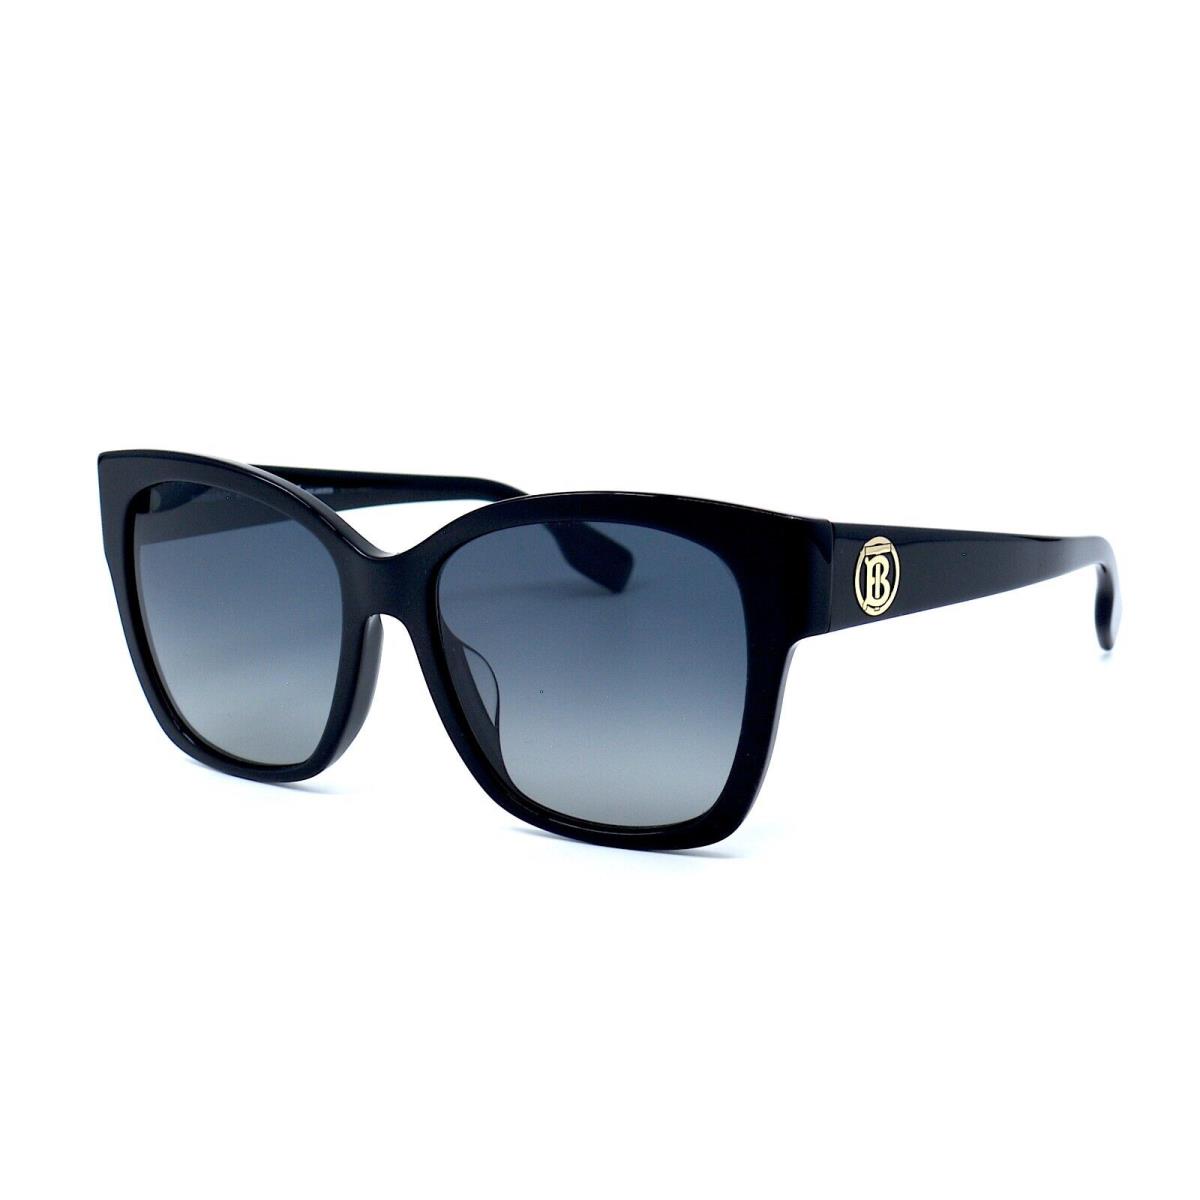 Burberry sunglasses  - BLACK Frame, Gray Lens